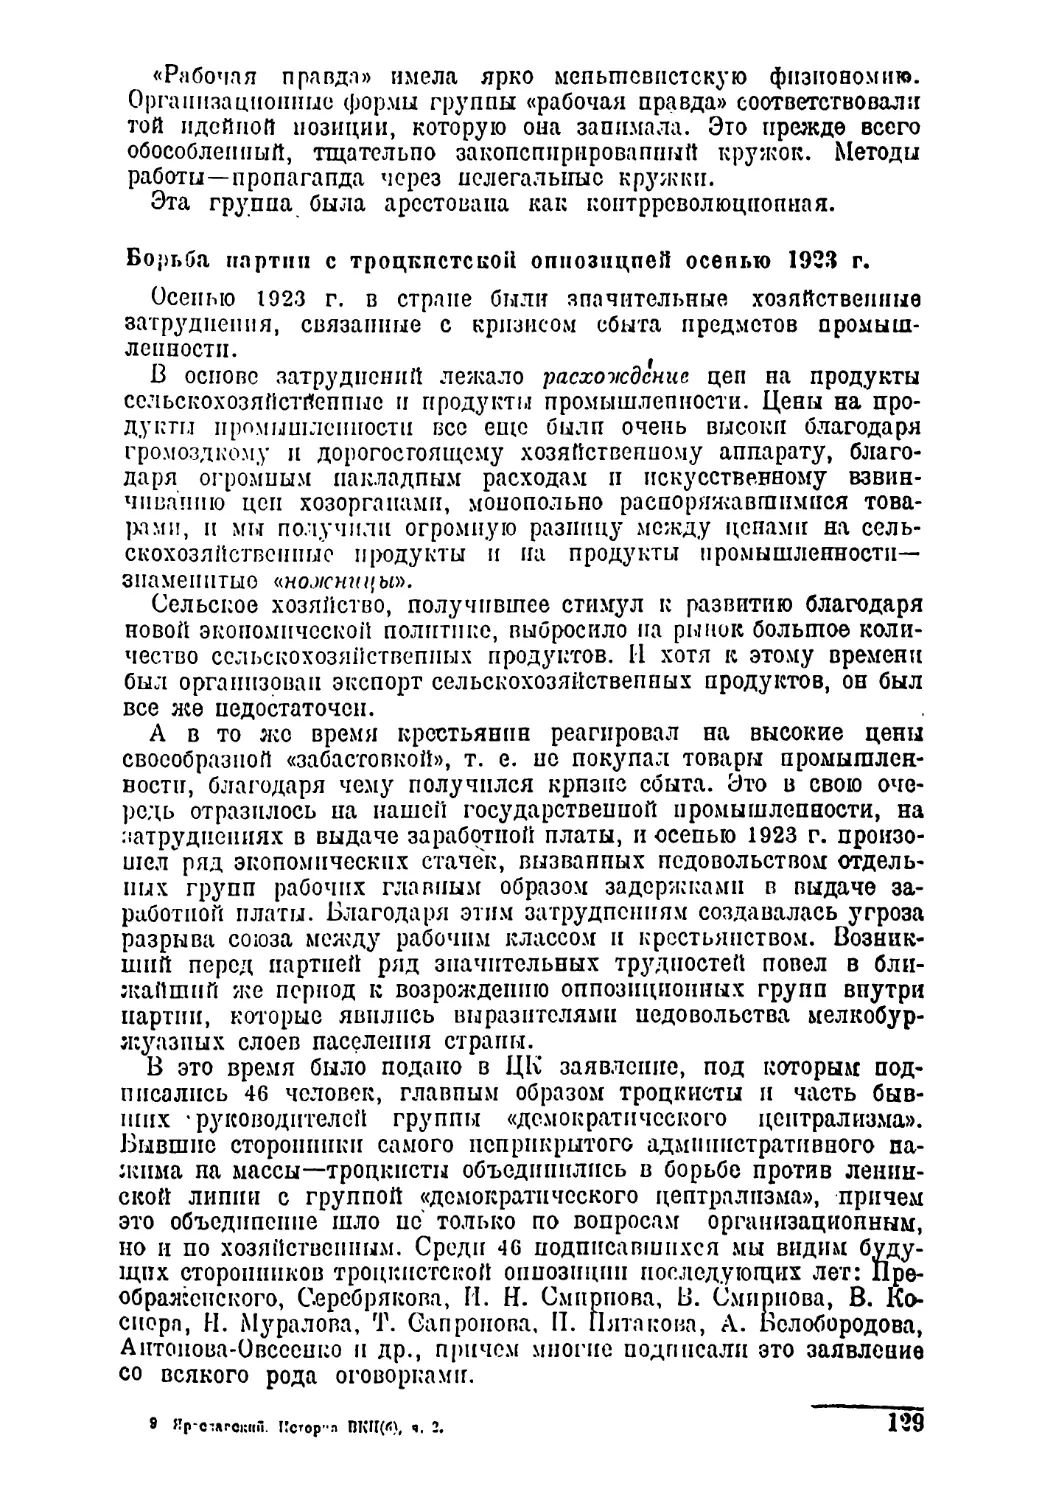 Борьба партии с троцкистской оппозицией осенью 1923 г.